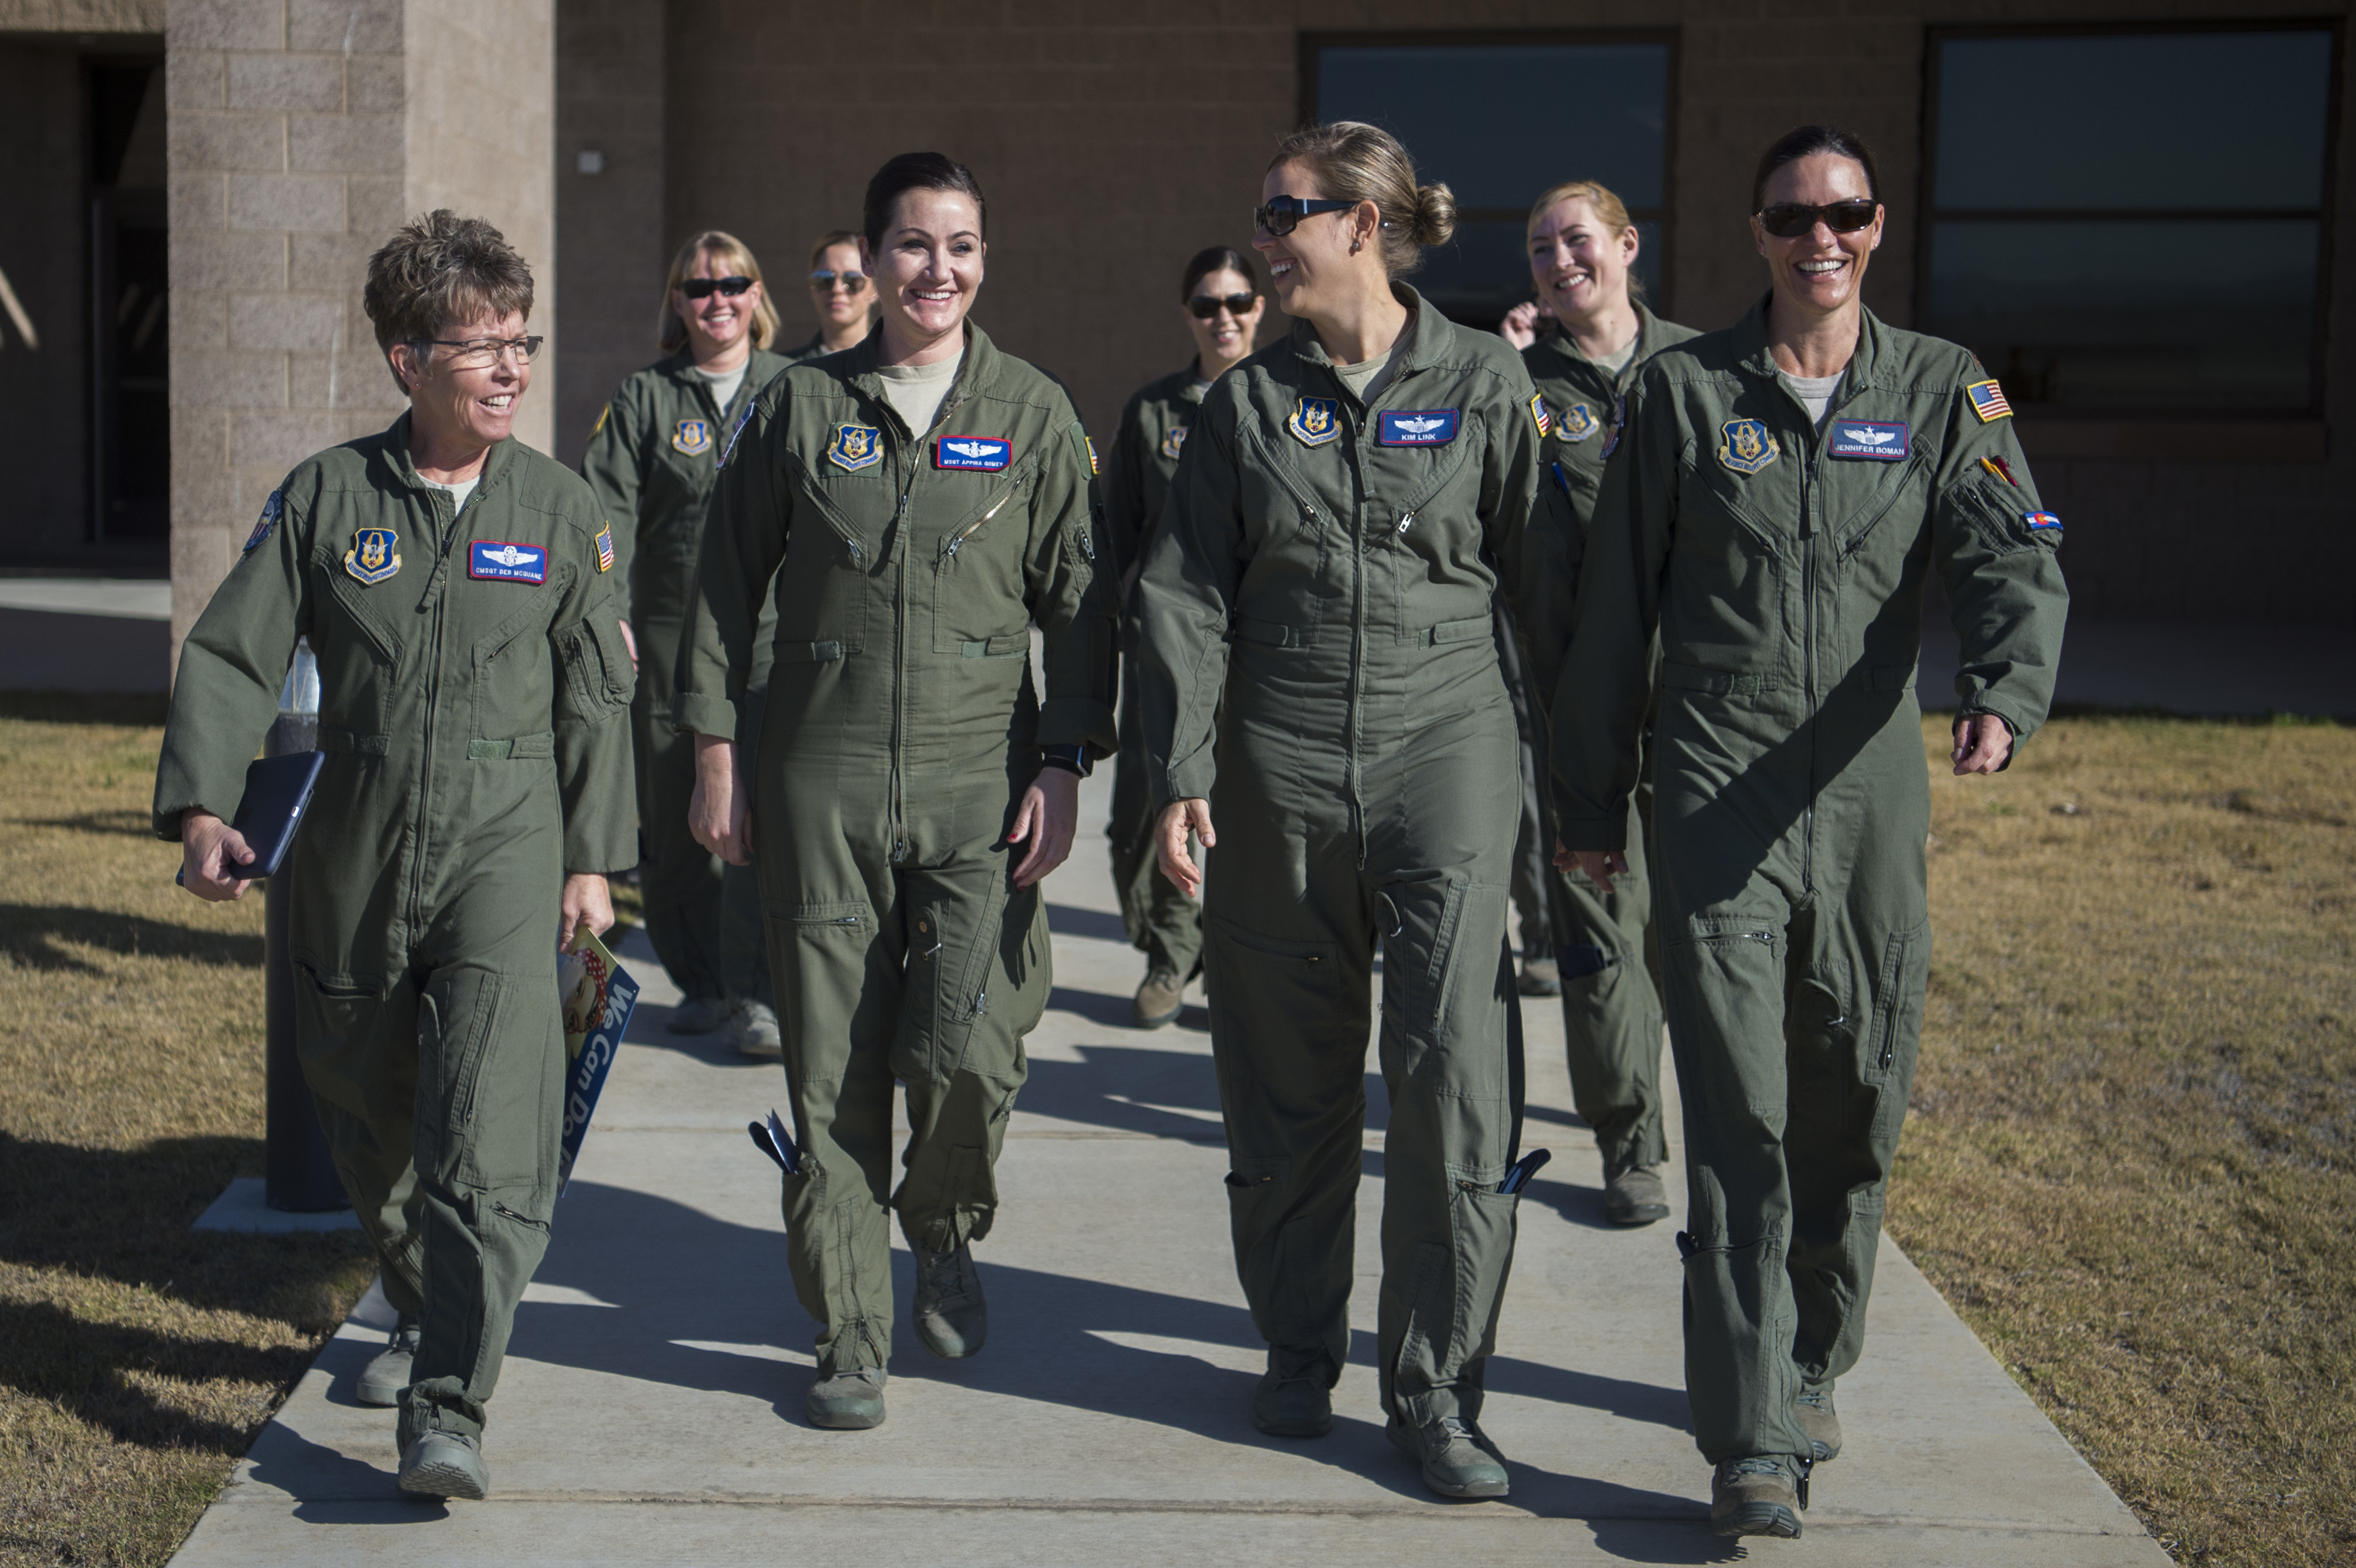 female air force